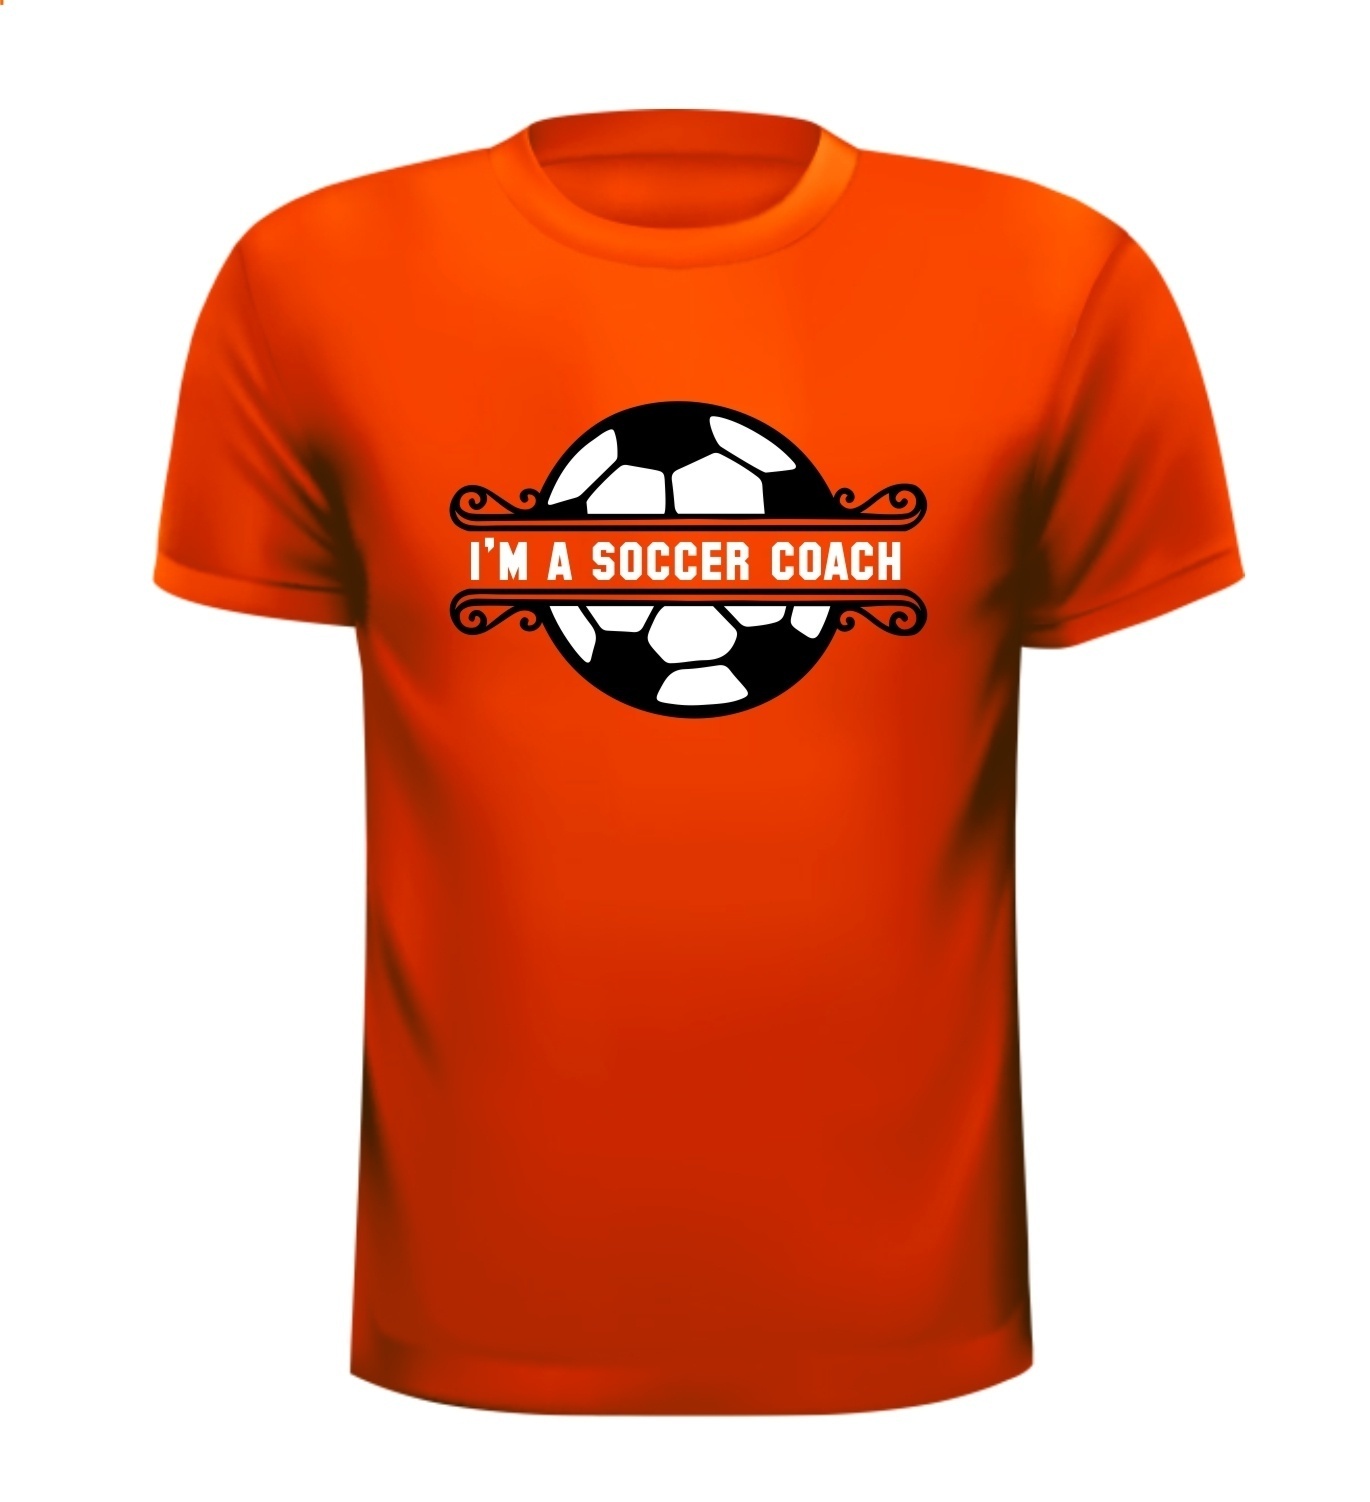 I'm a soccer coach shirt oranje shirt voetbal EK WK